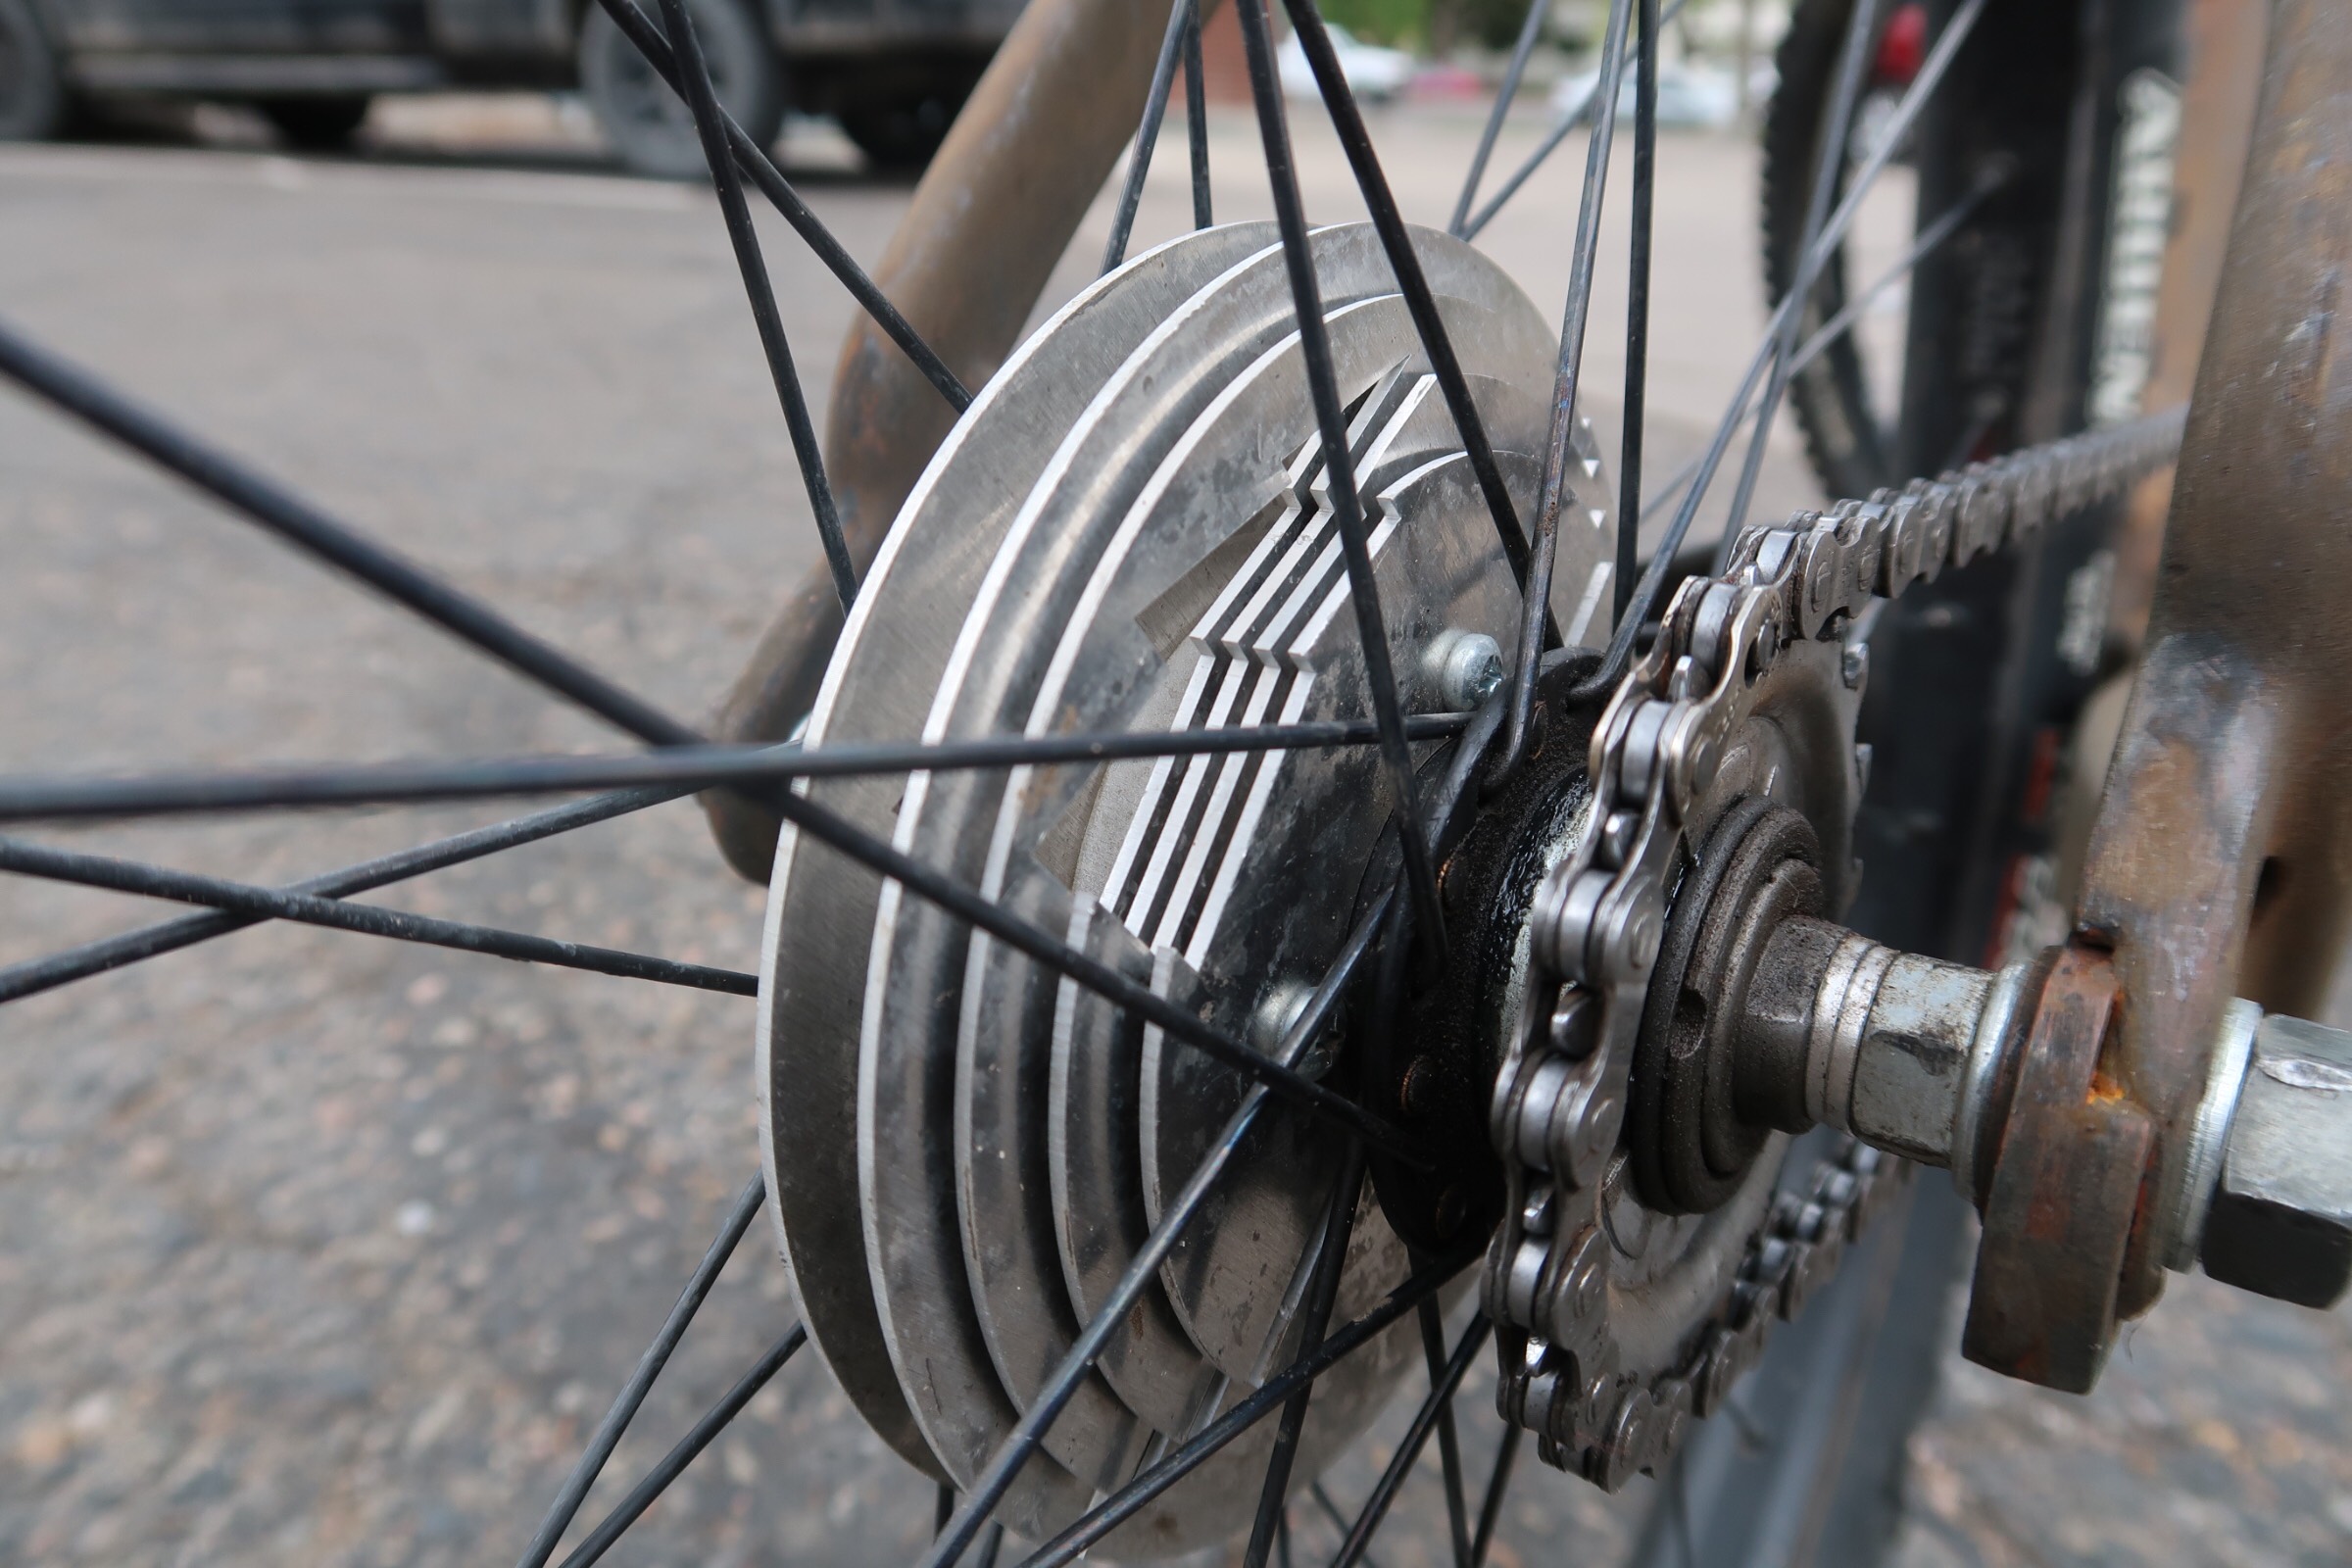 bicycle hub brake